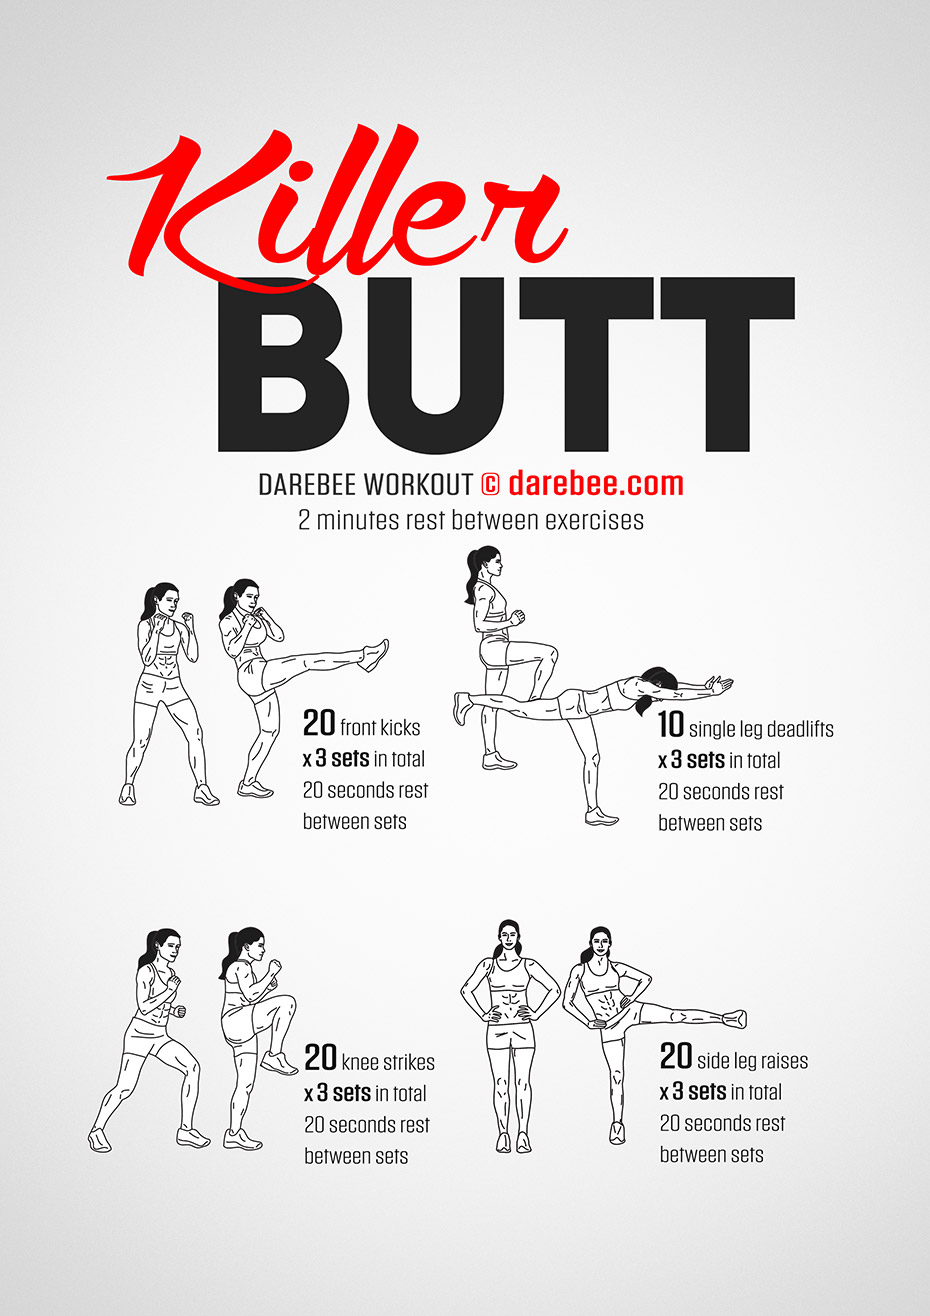 https://darebee.com/images/workouts/killer-butt-workout.jpg